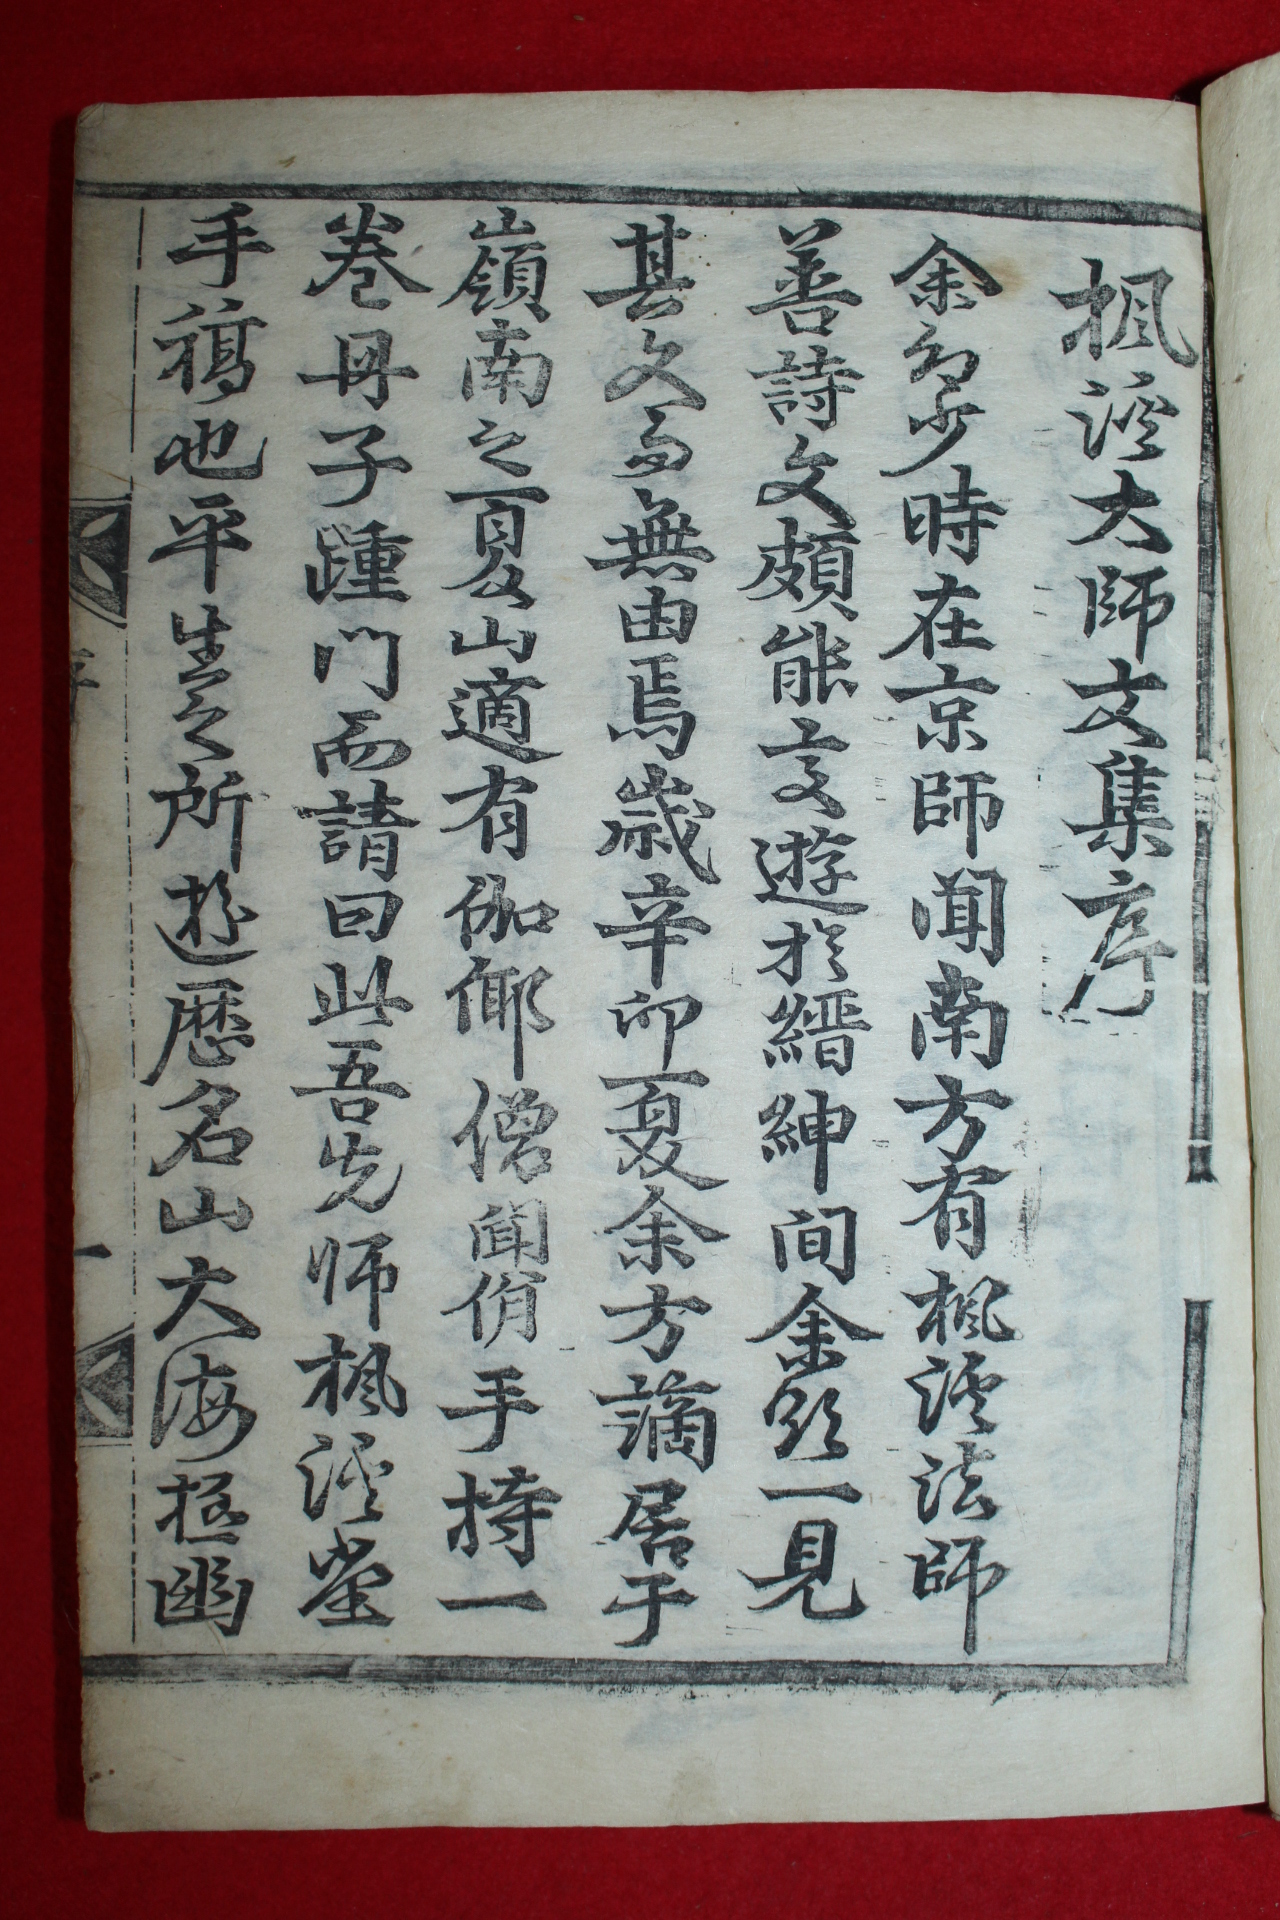 1711년 목판본 명찰(明察)대종사 풍계집(楓溪集) 1책완질